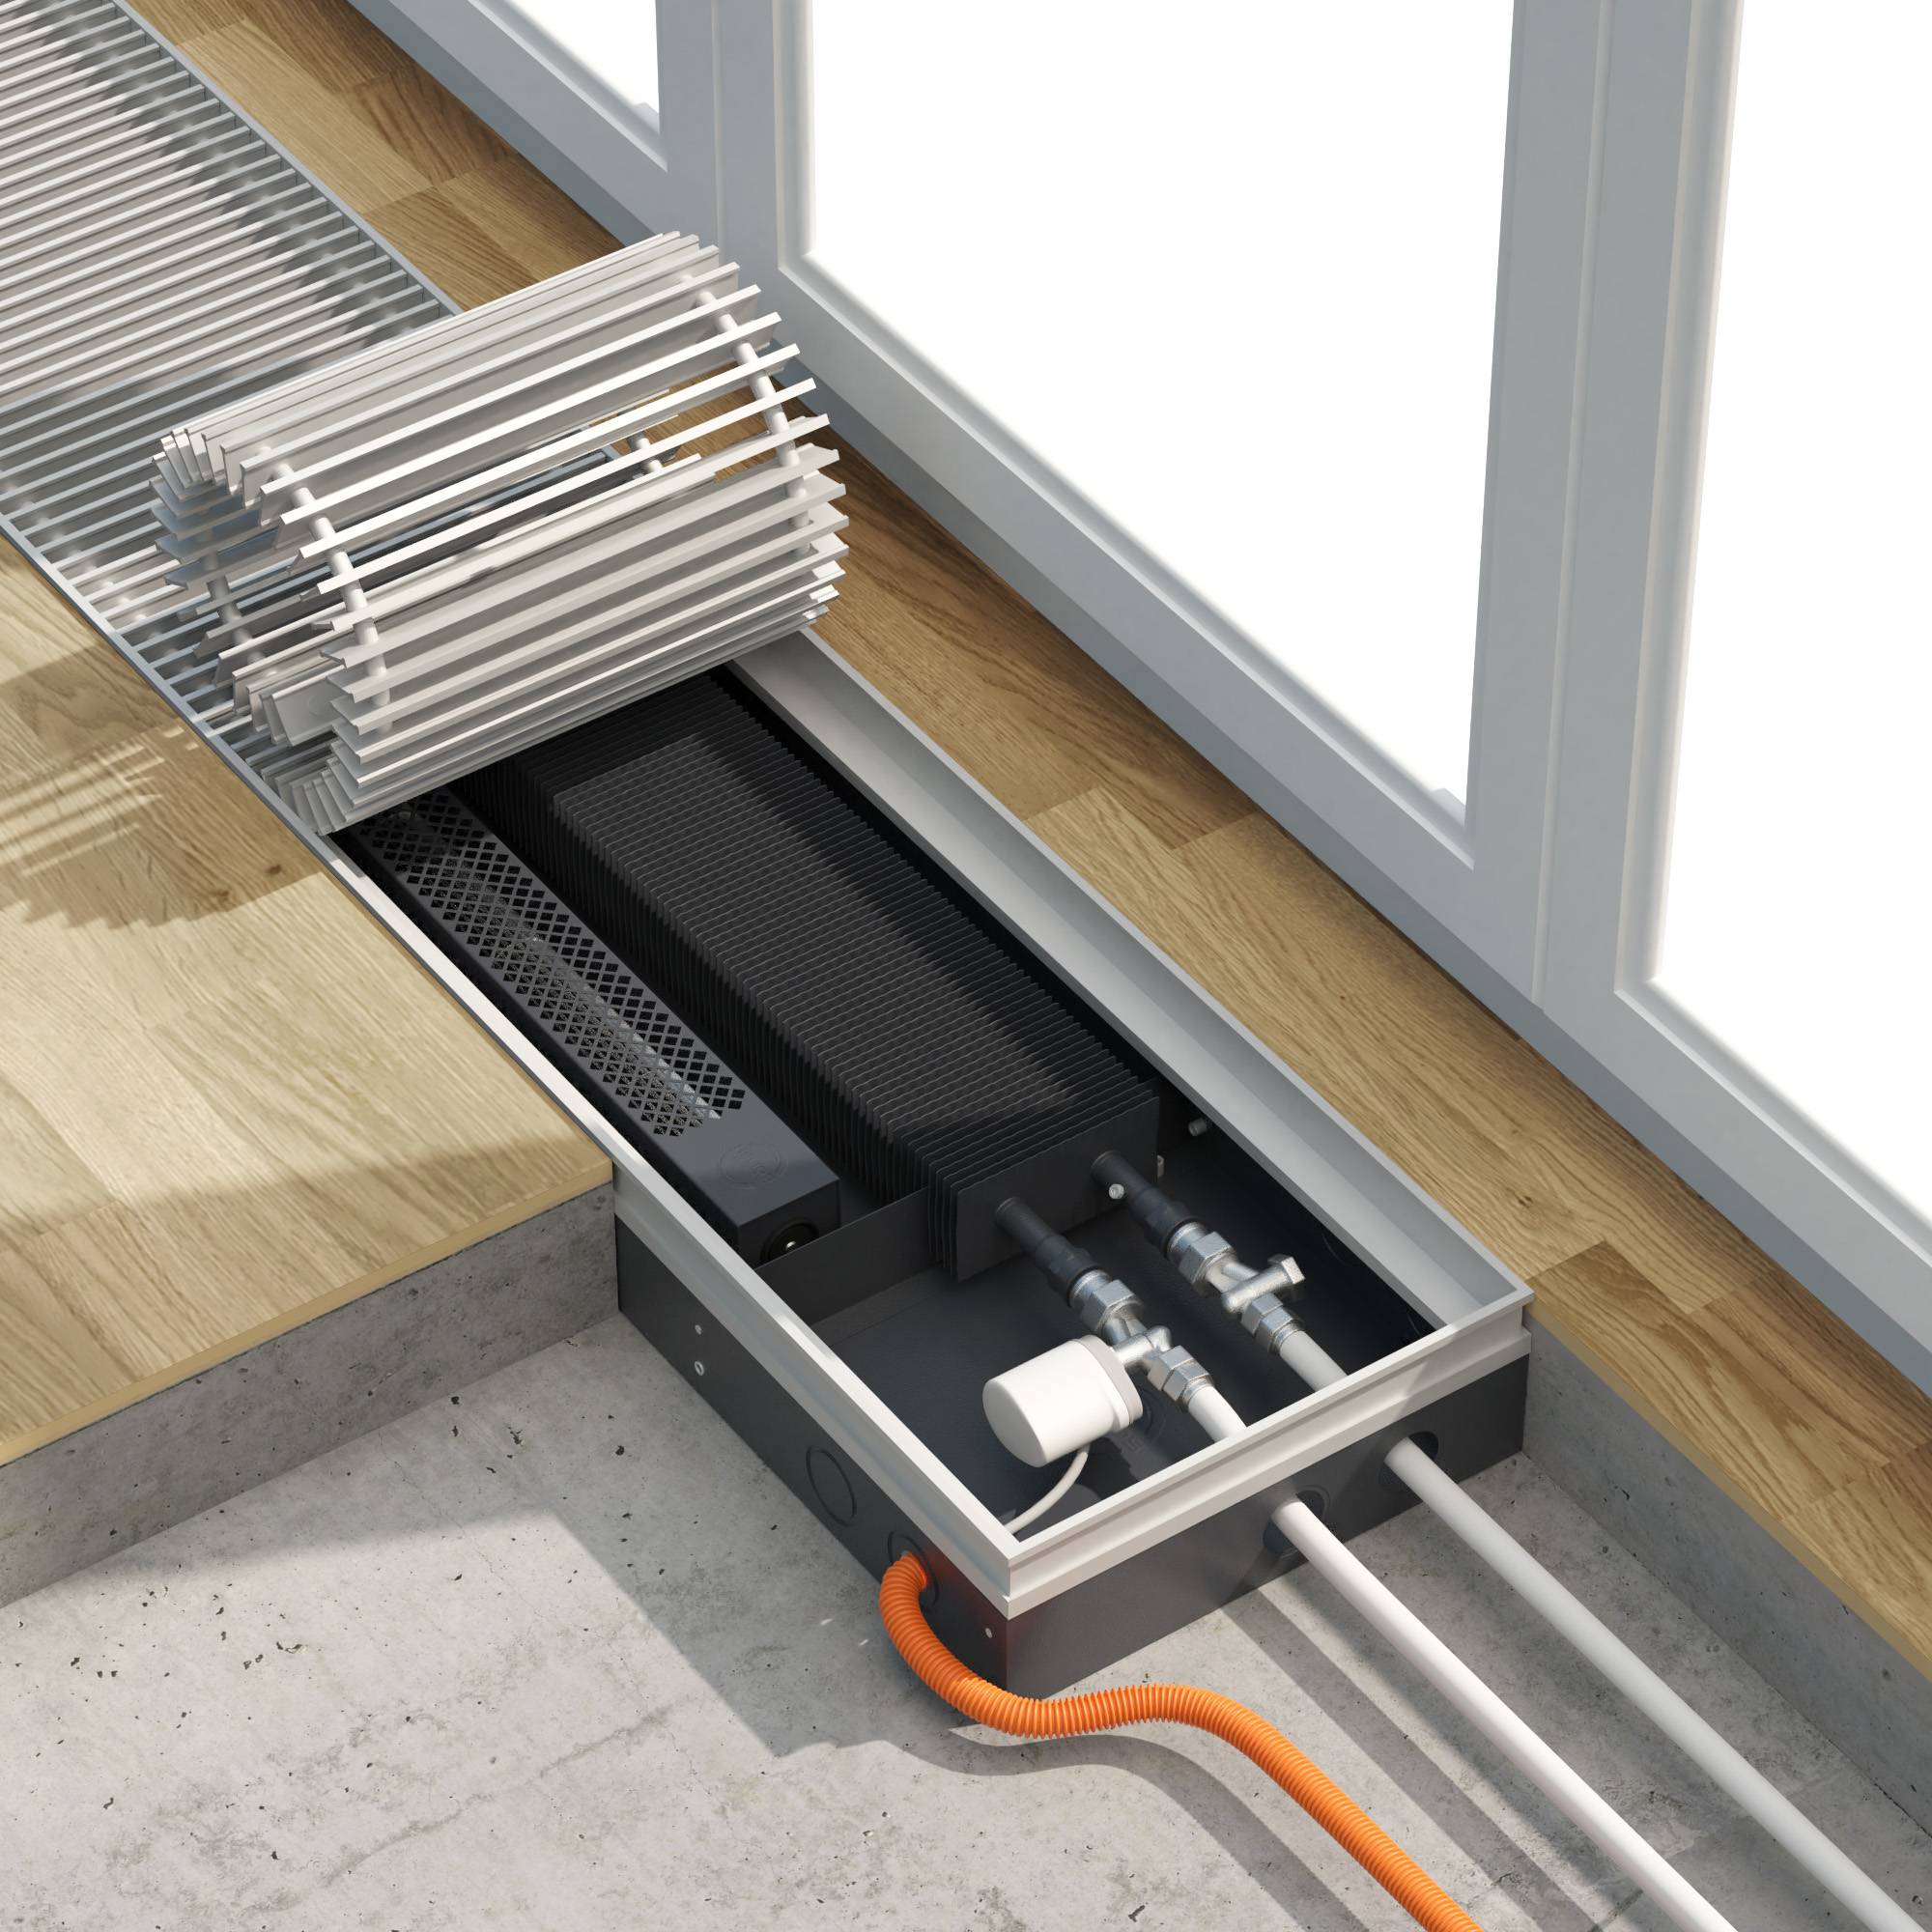 Батареи в полу: напольные встраиваемые радиаторы отопления, внутрипольные приборы, встроенные под окном